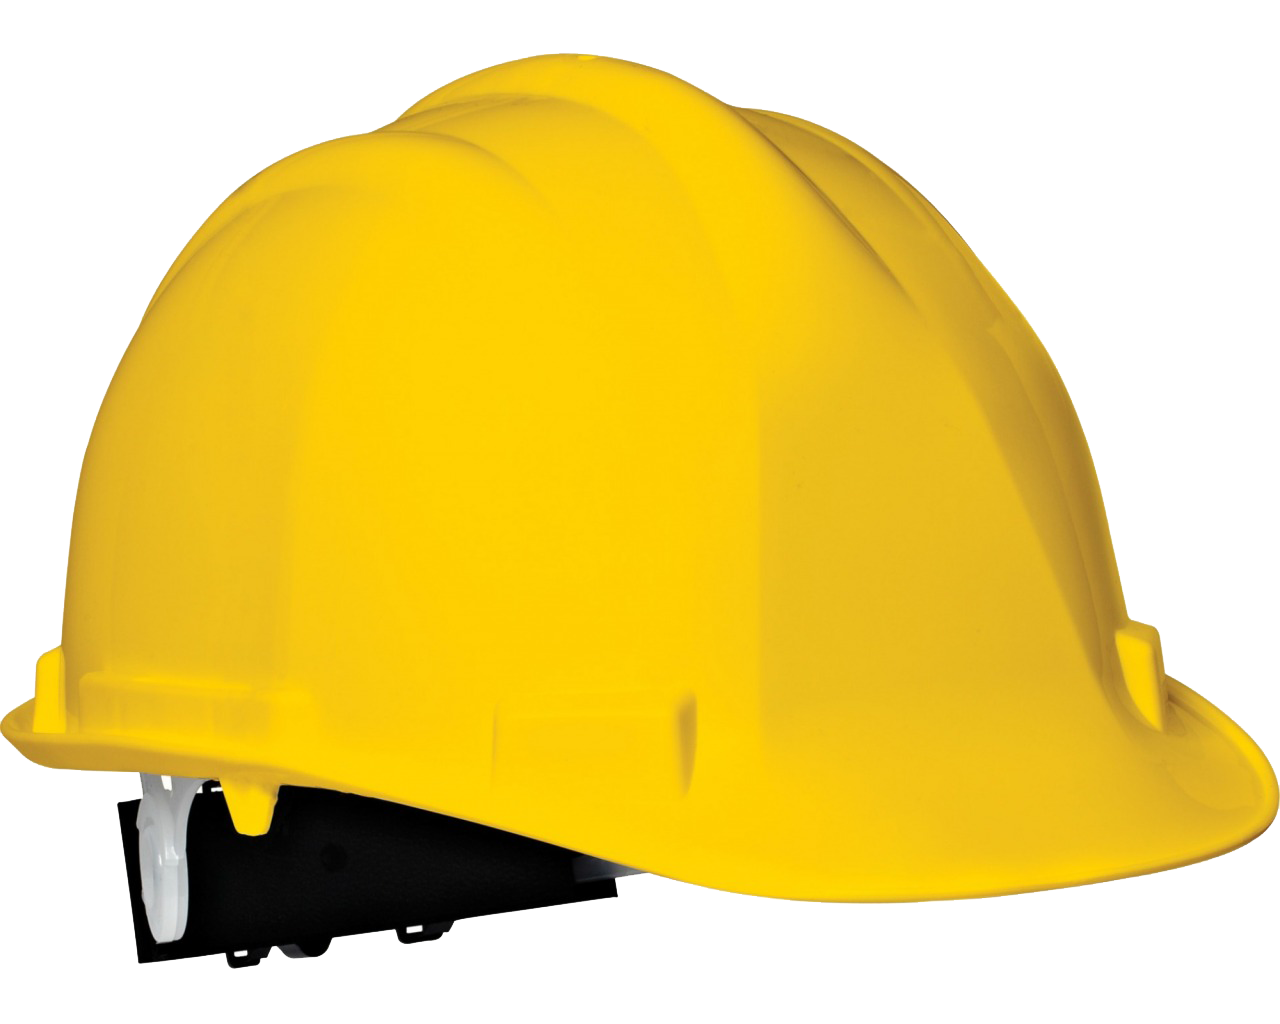 Safety Helmet PNG Background